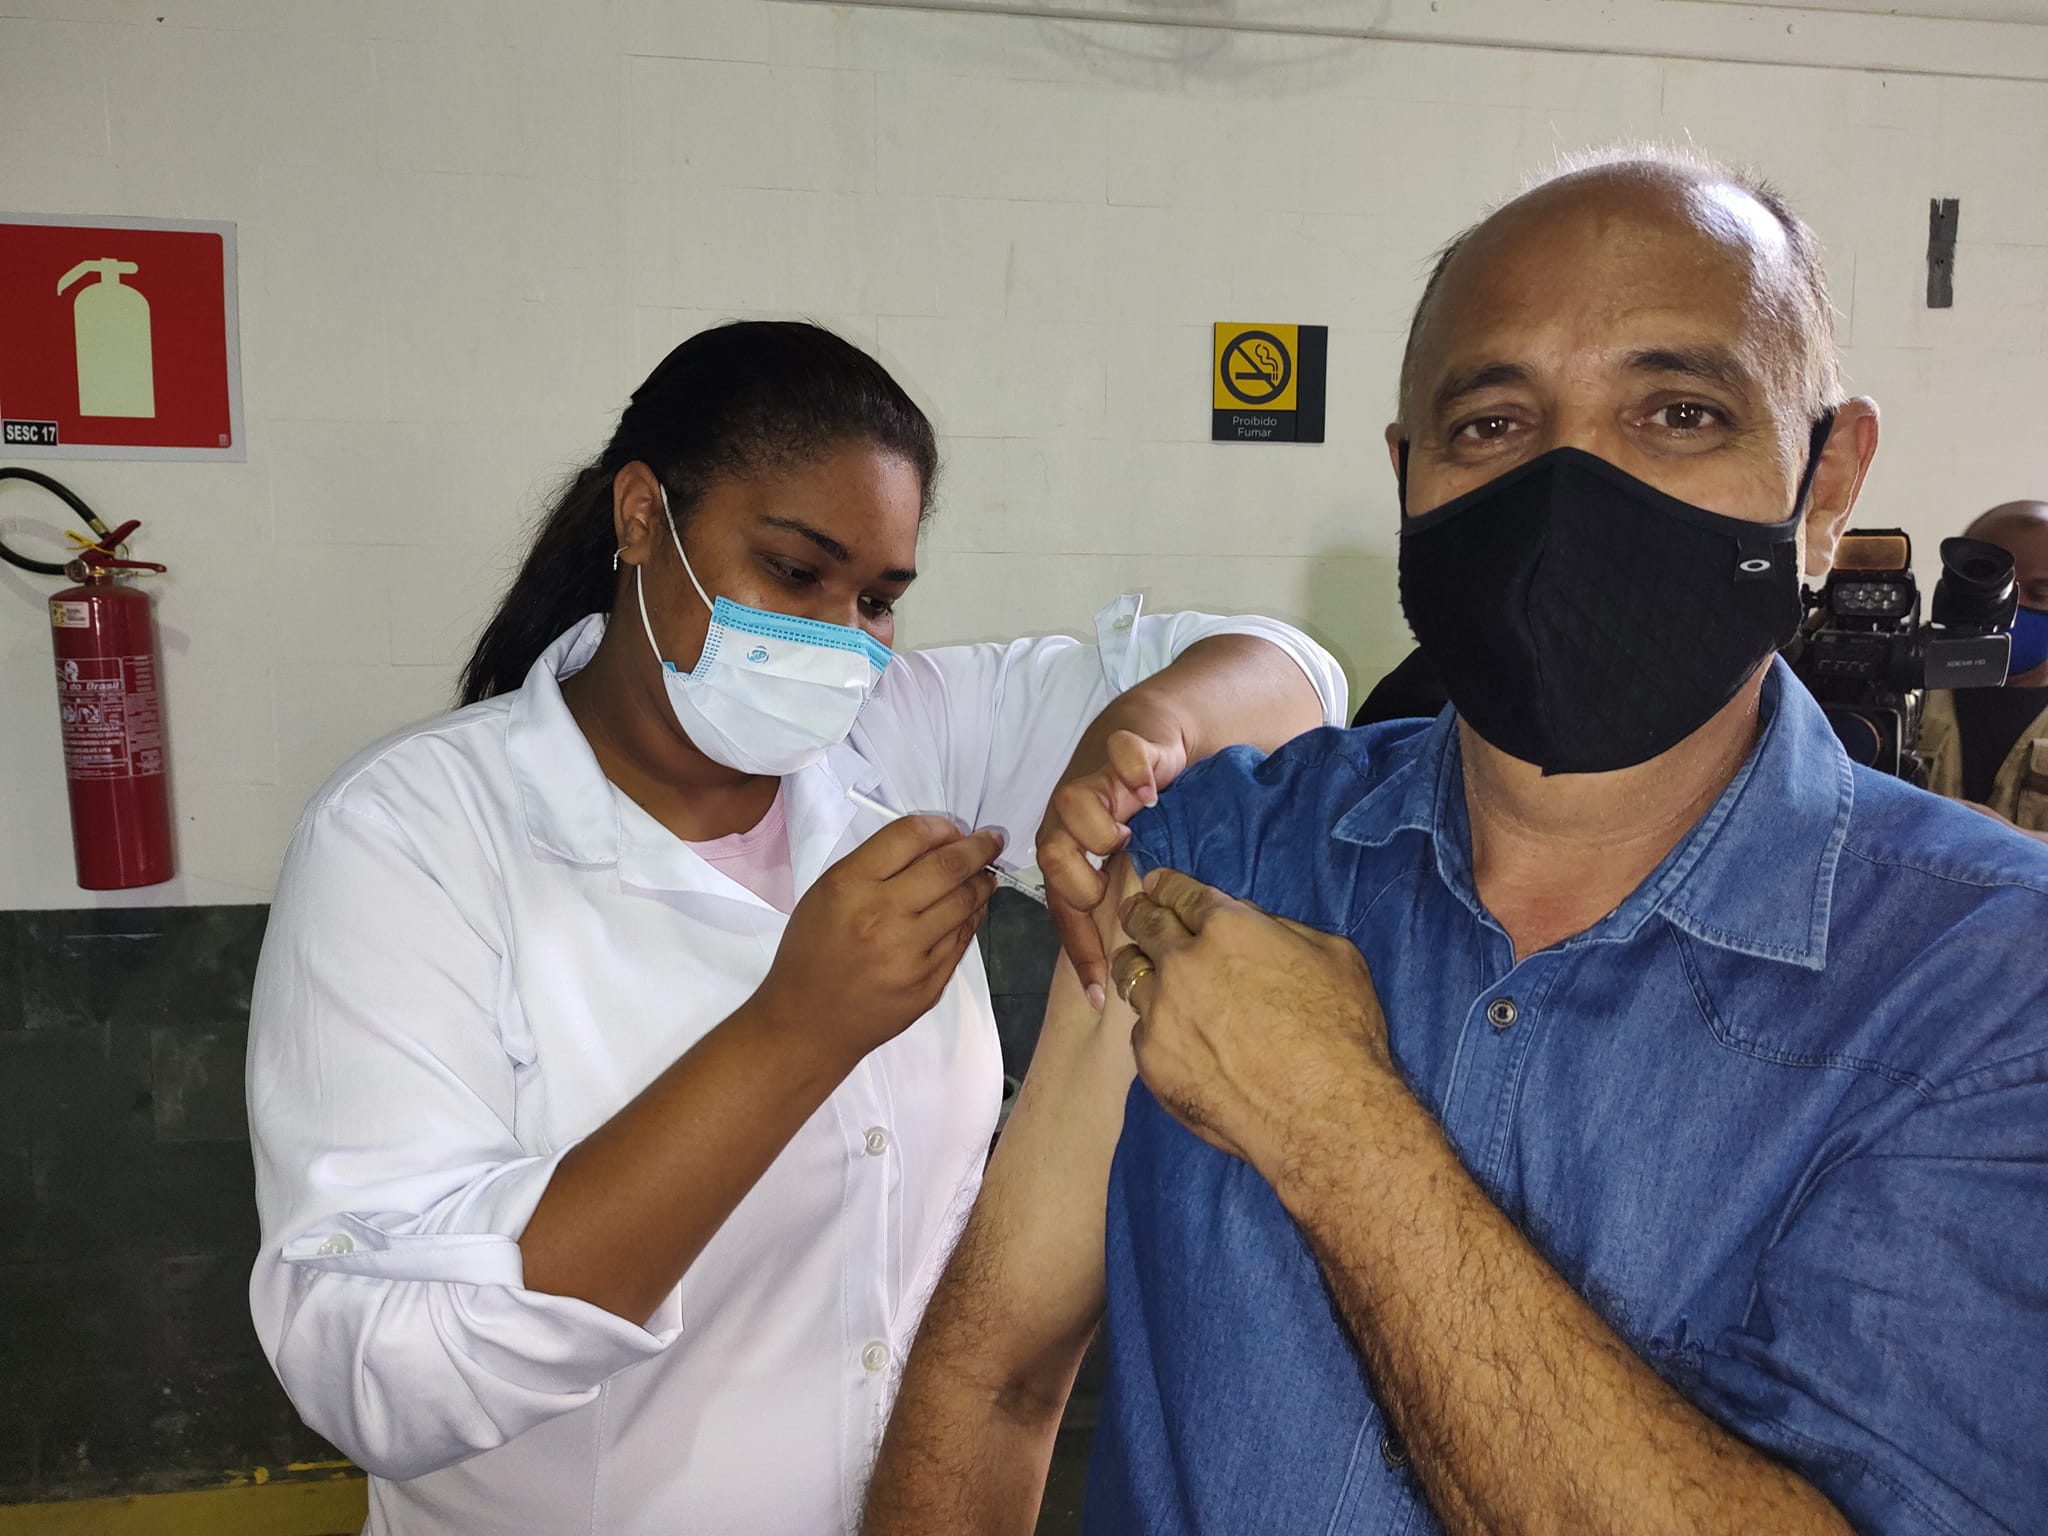 Prefeitura de Araxá realiza a repescagem da 1ª dose da vacina contra a Covid-19 para pessoas a partir de 12 anos sem comorbidades (adolescentes, adultos e idosos) nesta quarta-feira (22)